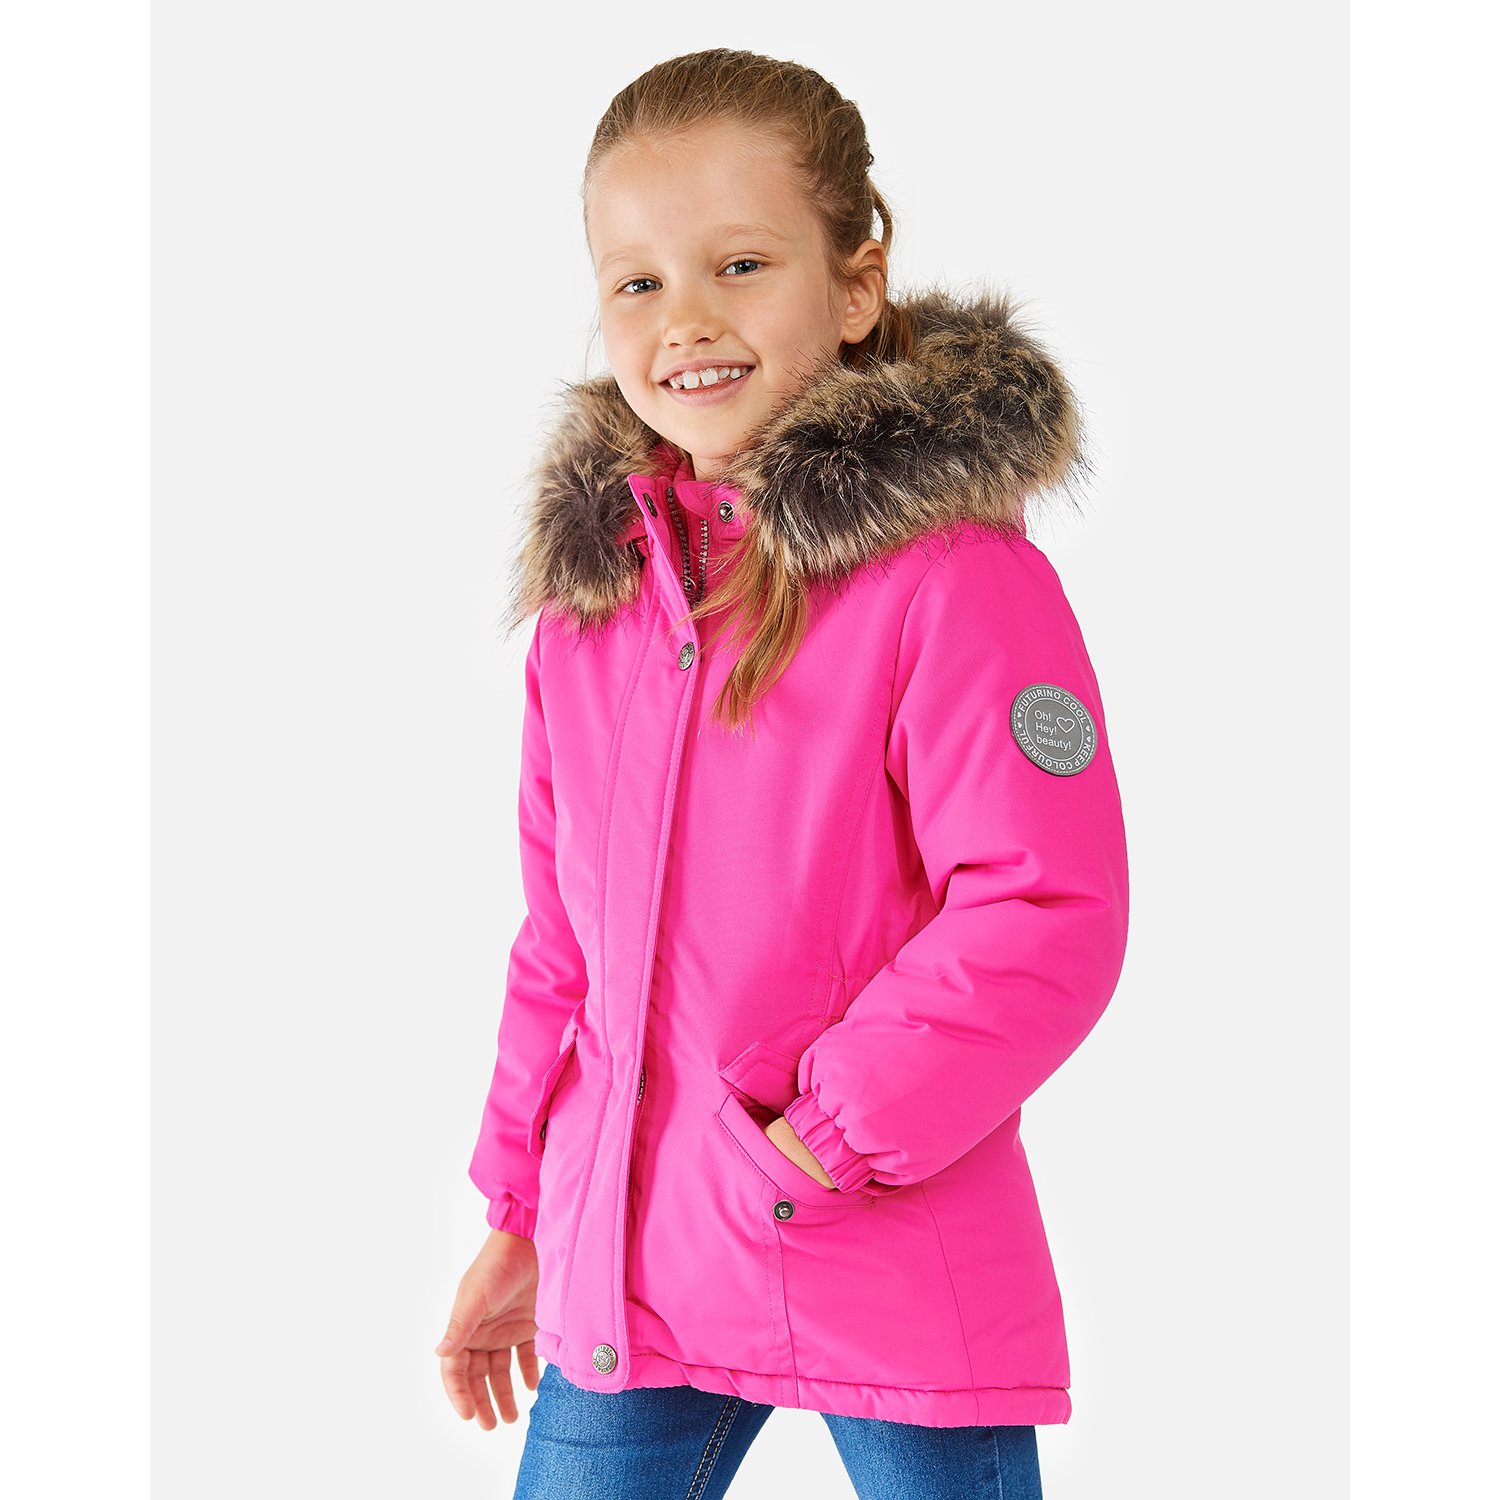 Зимние Детские Куртки Для Девочек Интернет Магазин